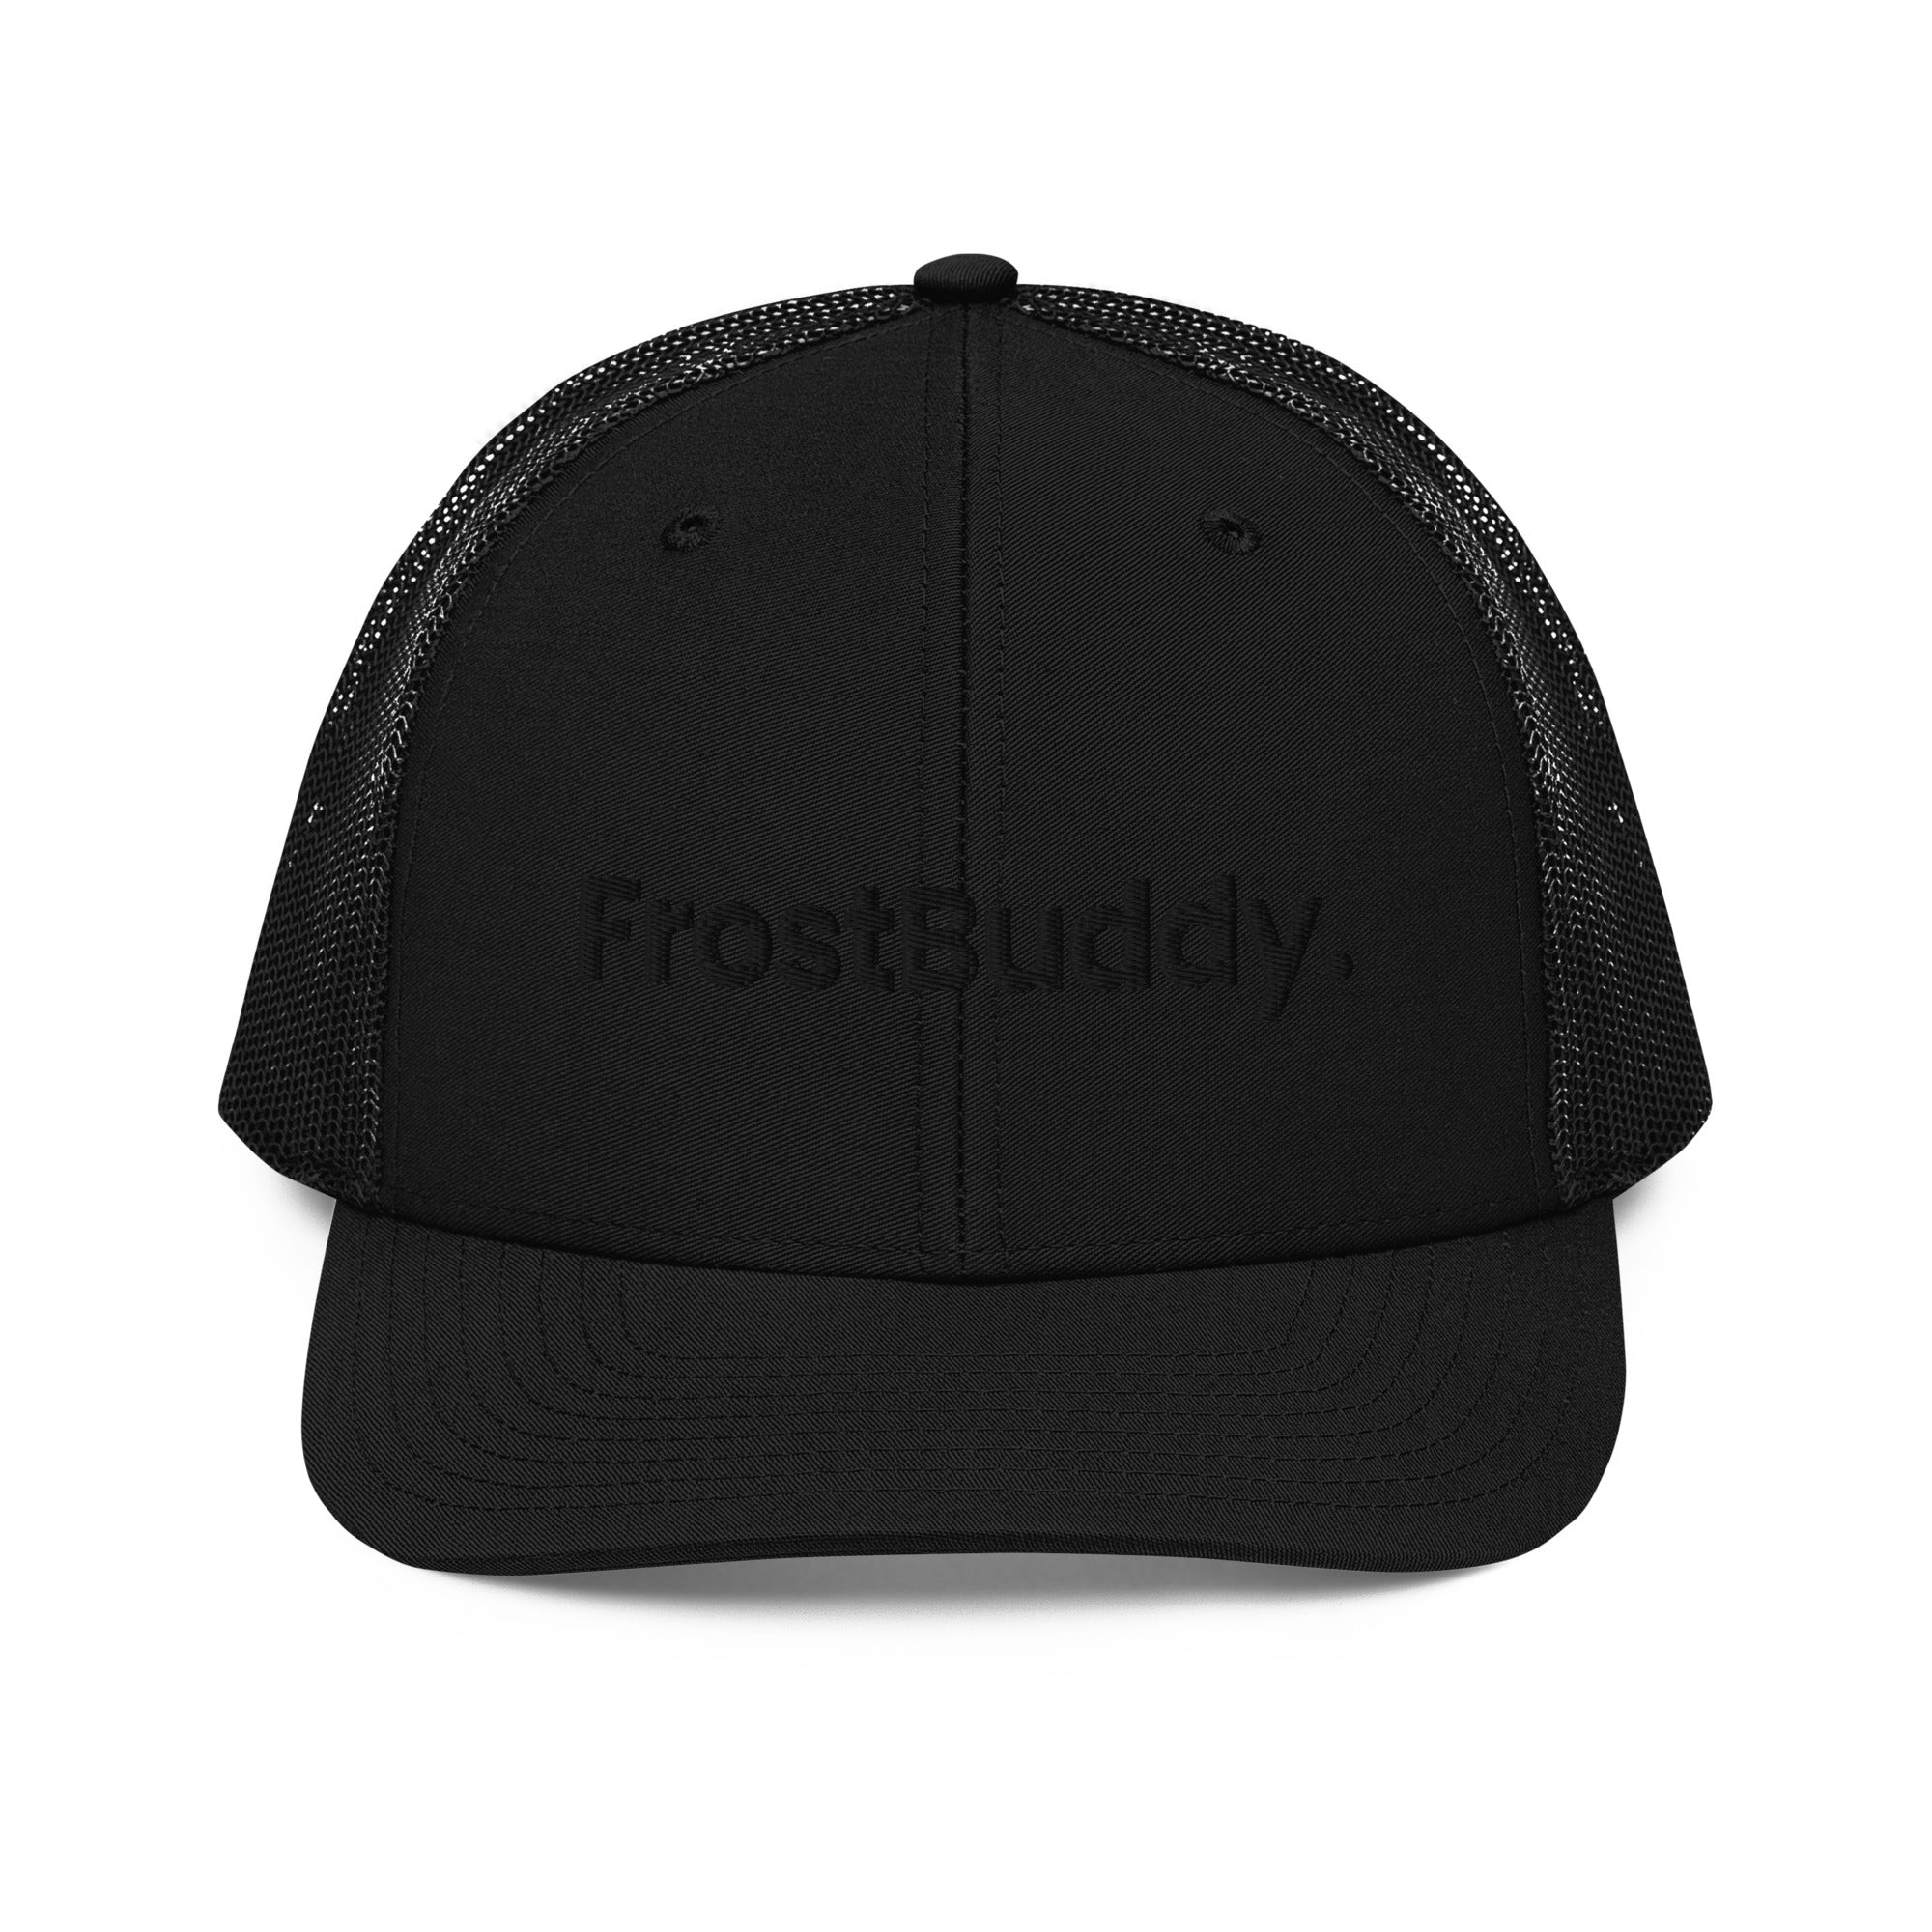 Frost Buddy  Black Logo Trucker Cap